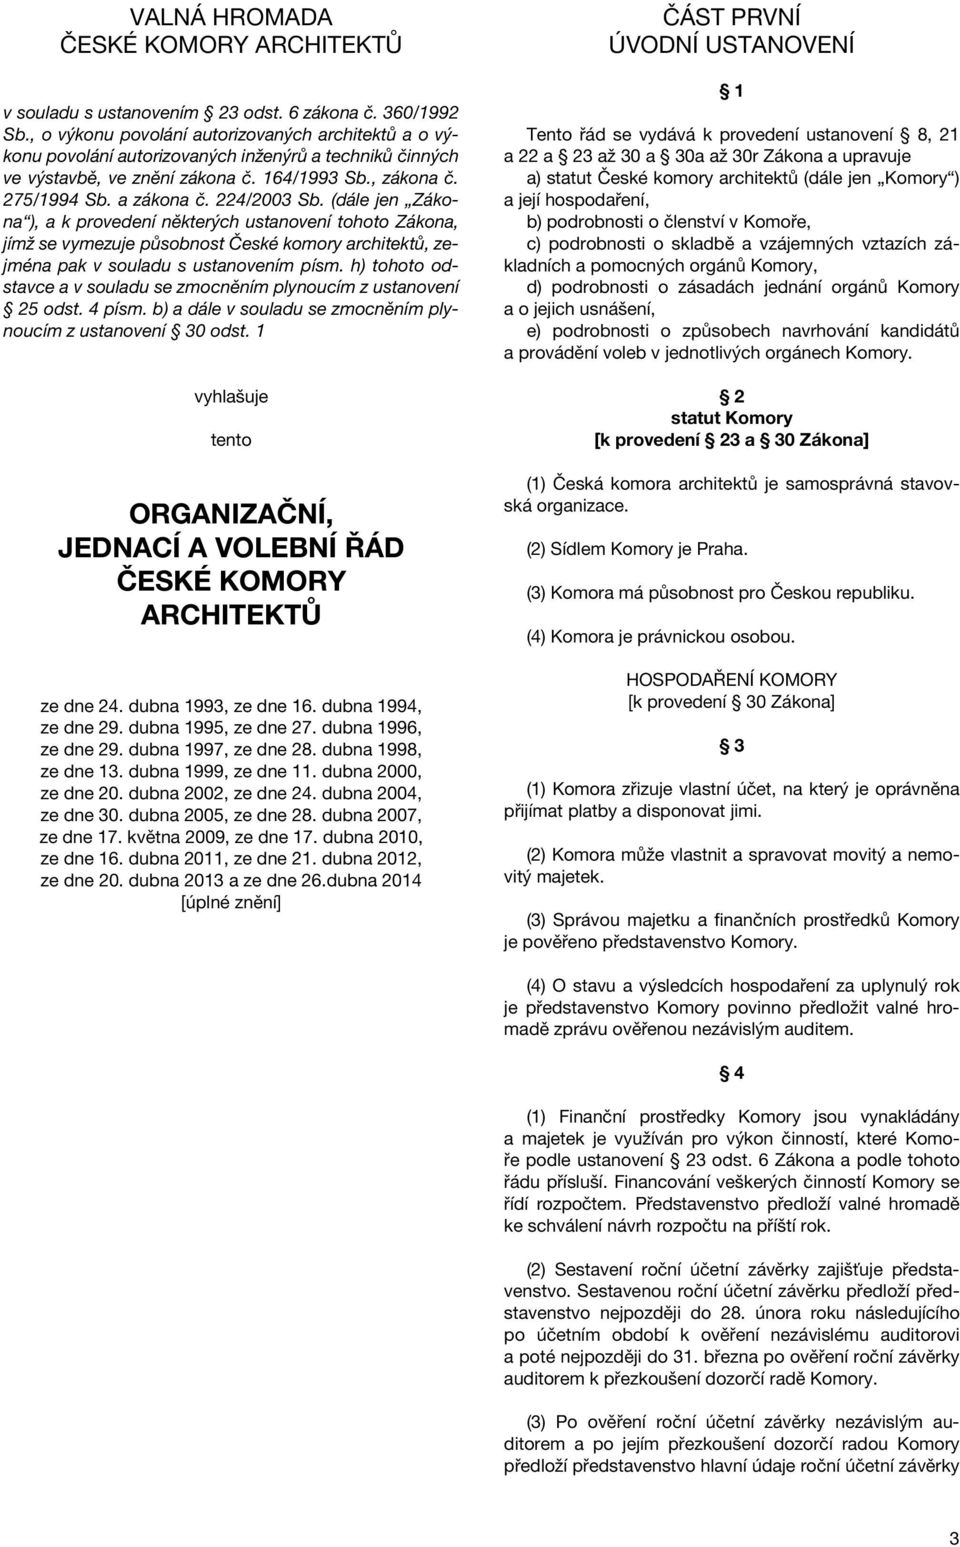 224/2003 Sb. (dále jen Zákona ), a k provedení některých ustanovení tohoto Zákona, jímž se vymezuje působnost České komory architektů, zejména pak v souladu s ustanovením písm.